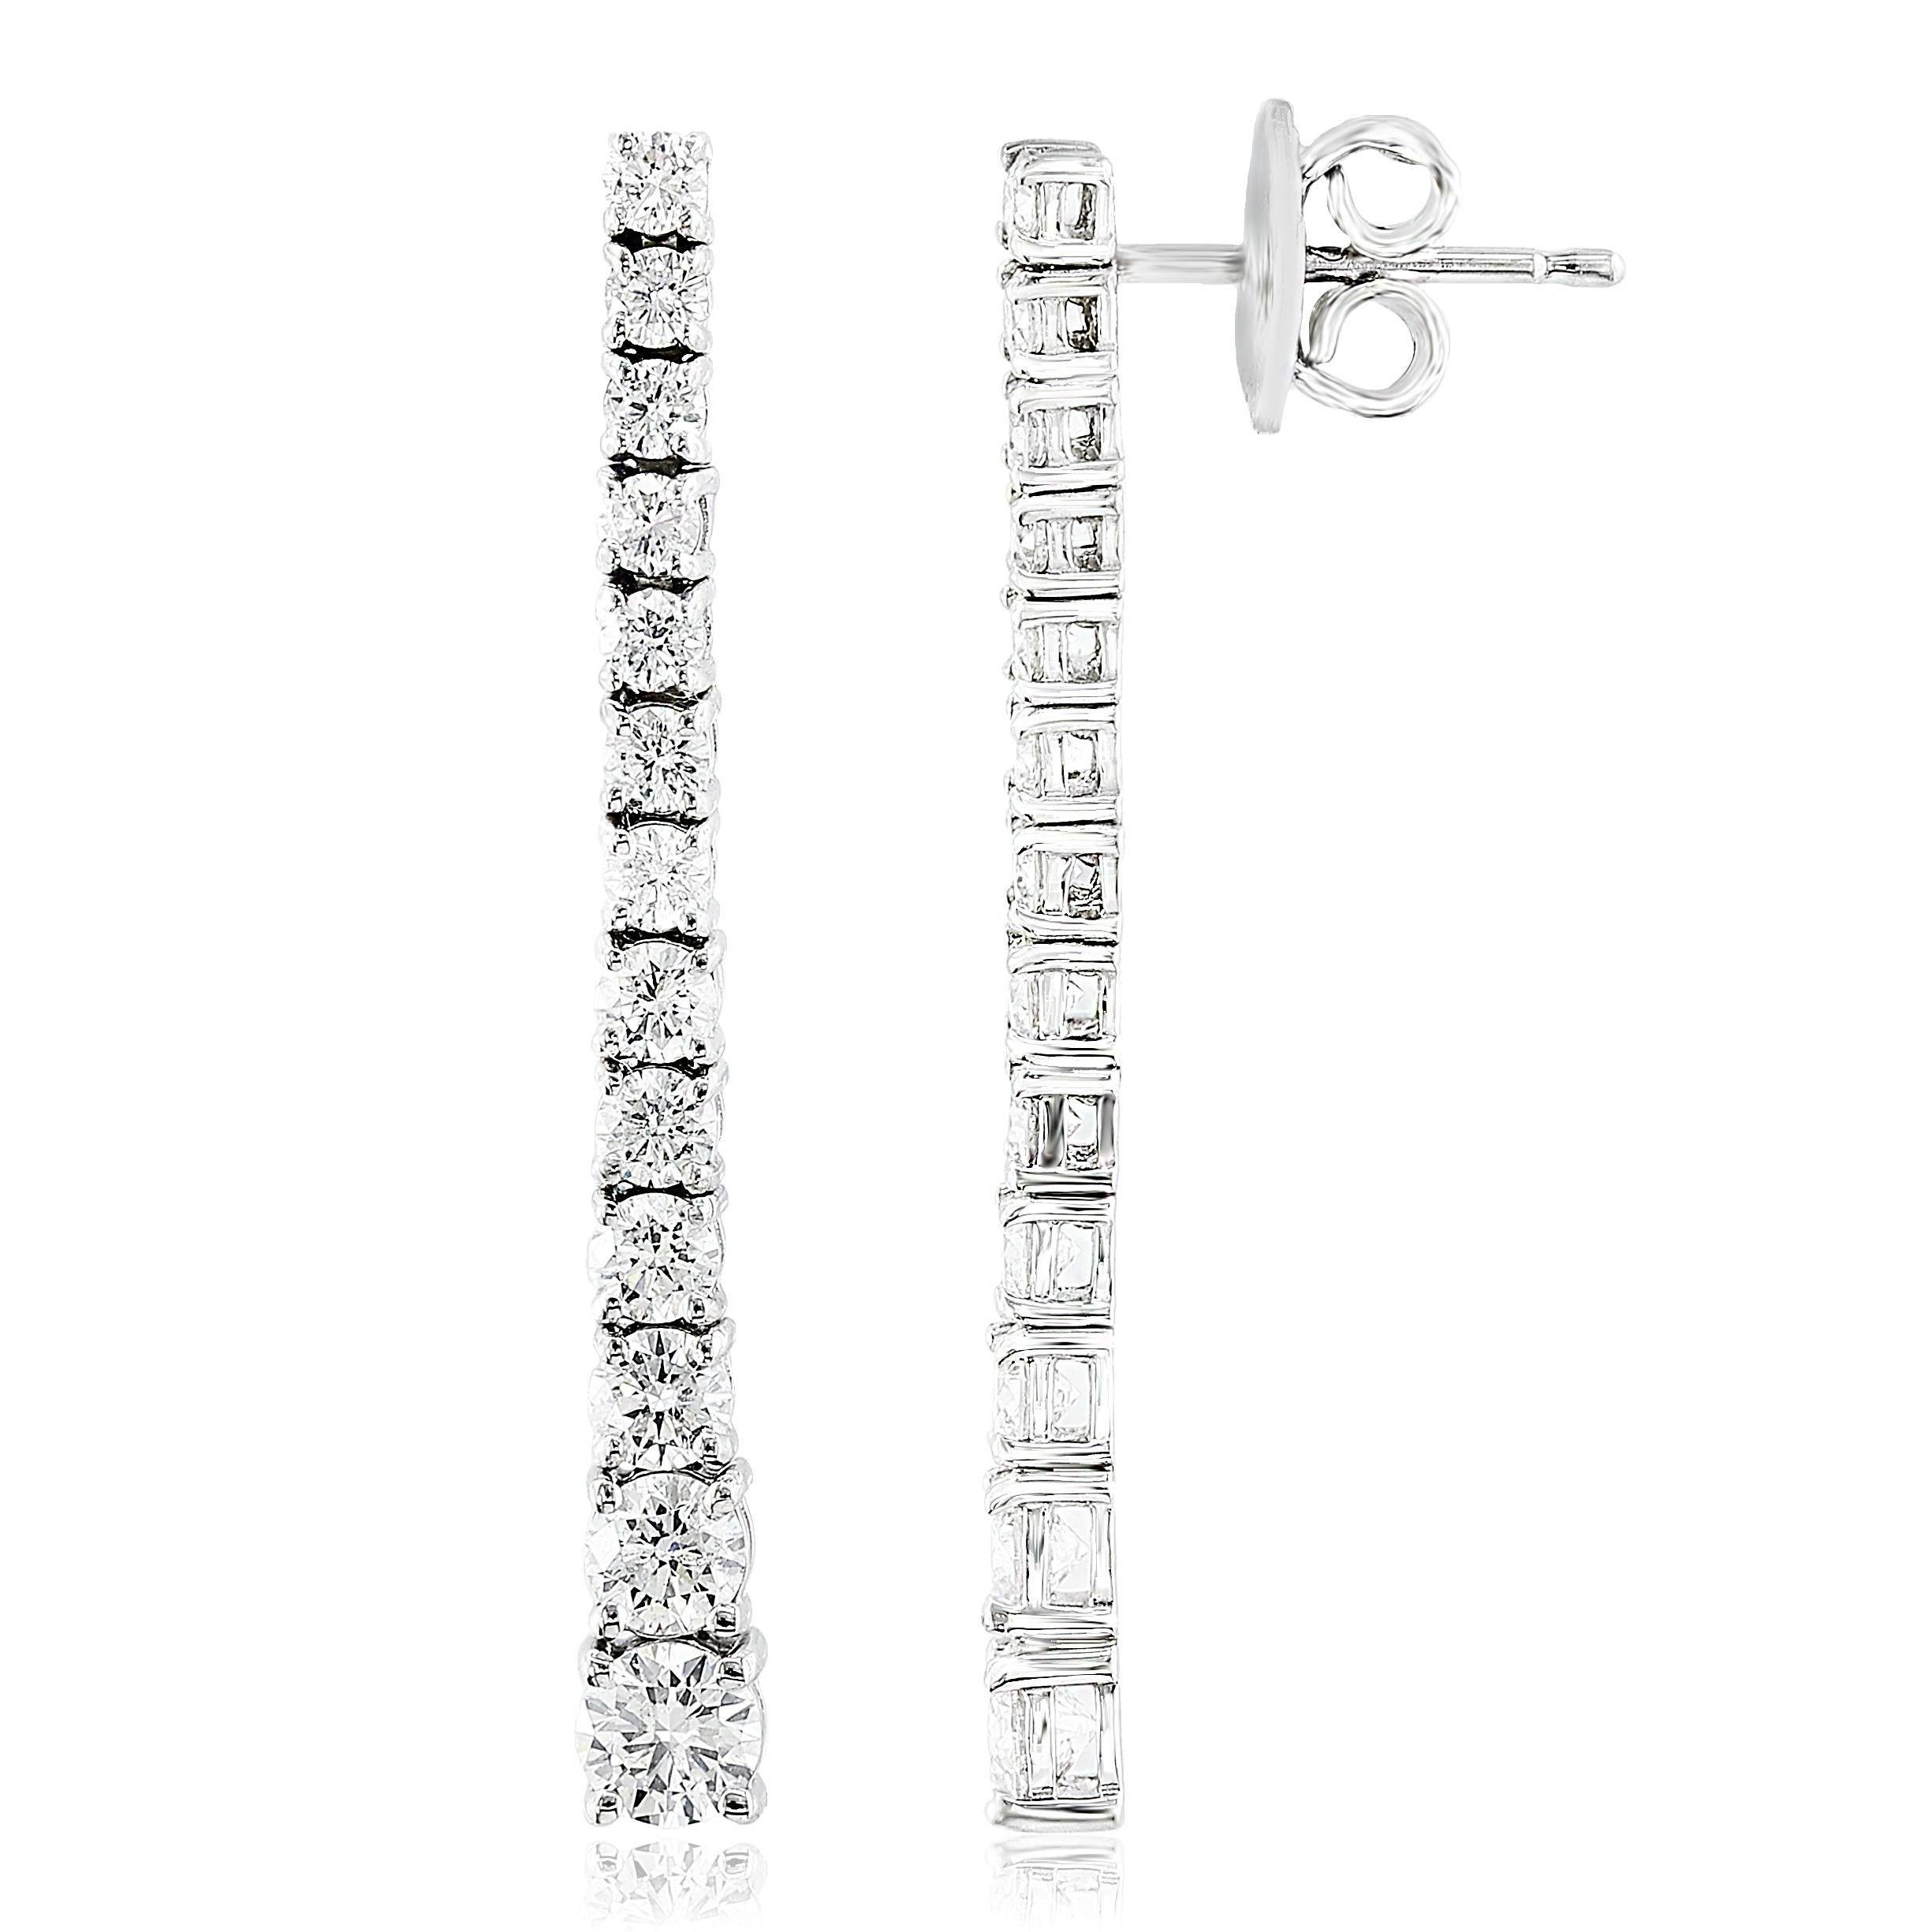 Une importante paire de boucles d'oreilles pendantes mettant en valeur une seule rangée de diamants ronds de 2 carats. 

Style disponible dans différentes gammes de prix. Les prix sont basés sur votre sélection des 4C : Carat, Color, Clarity, Cut